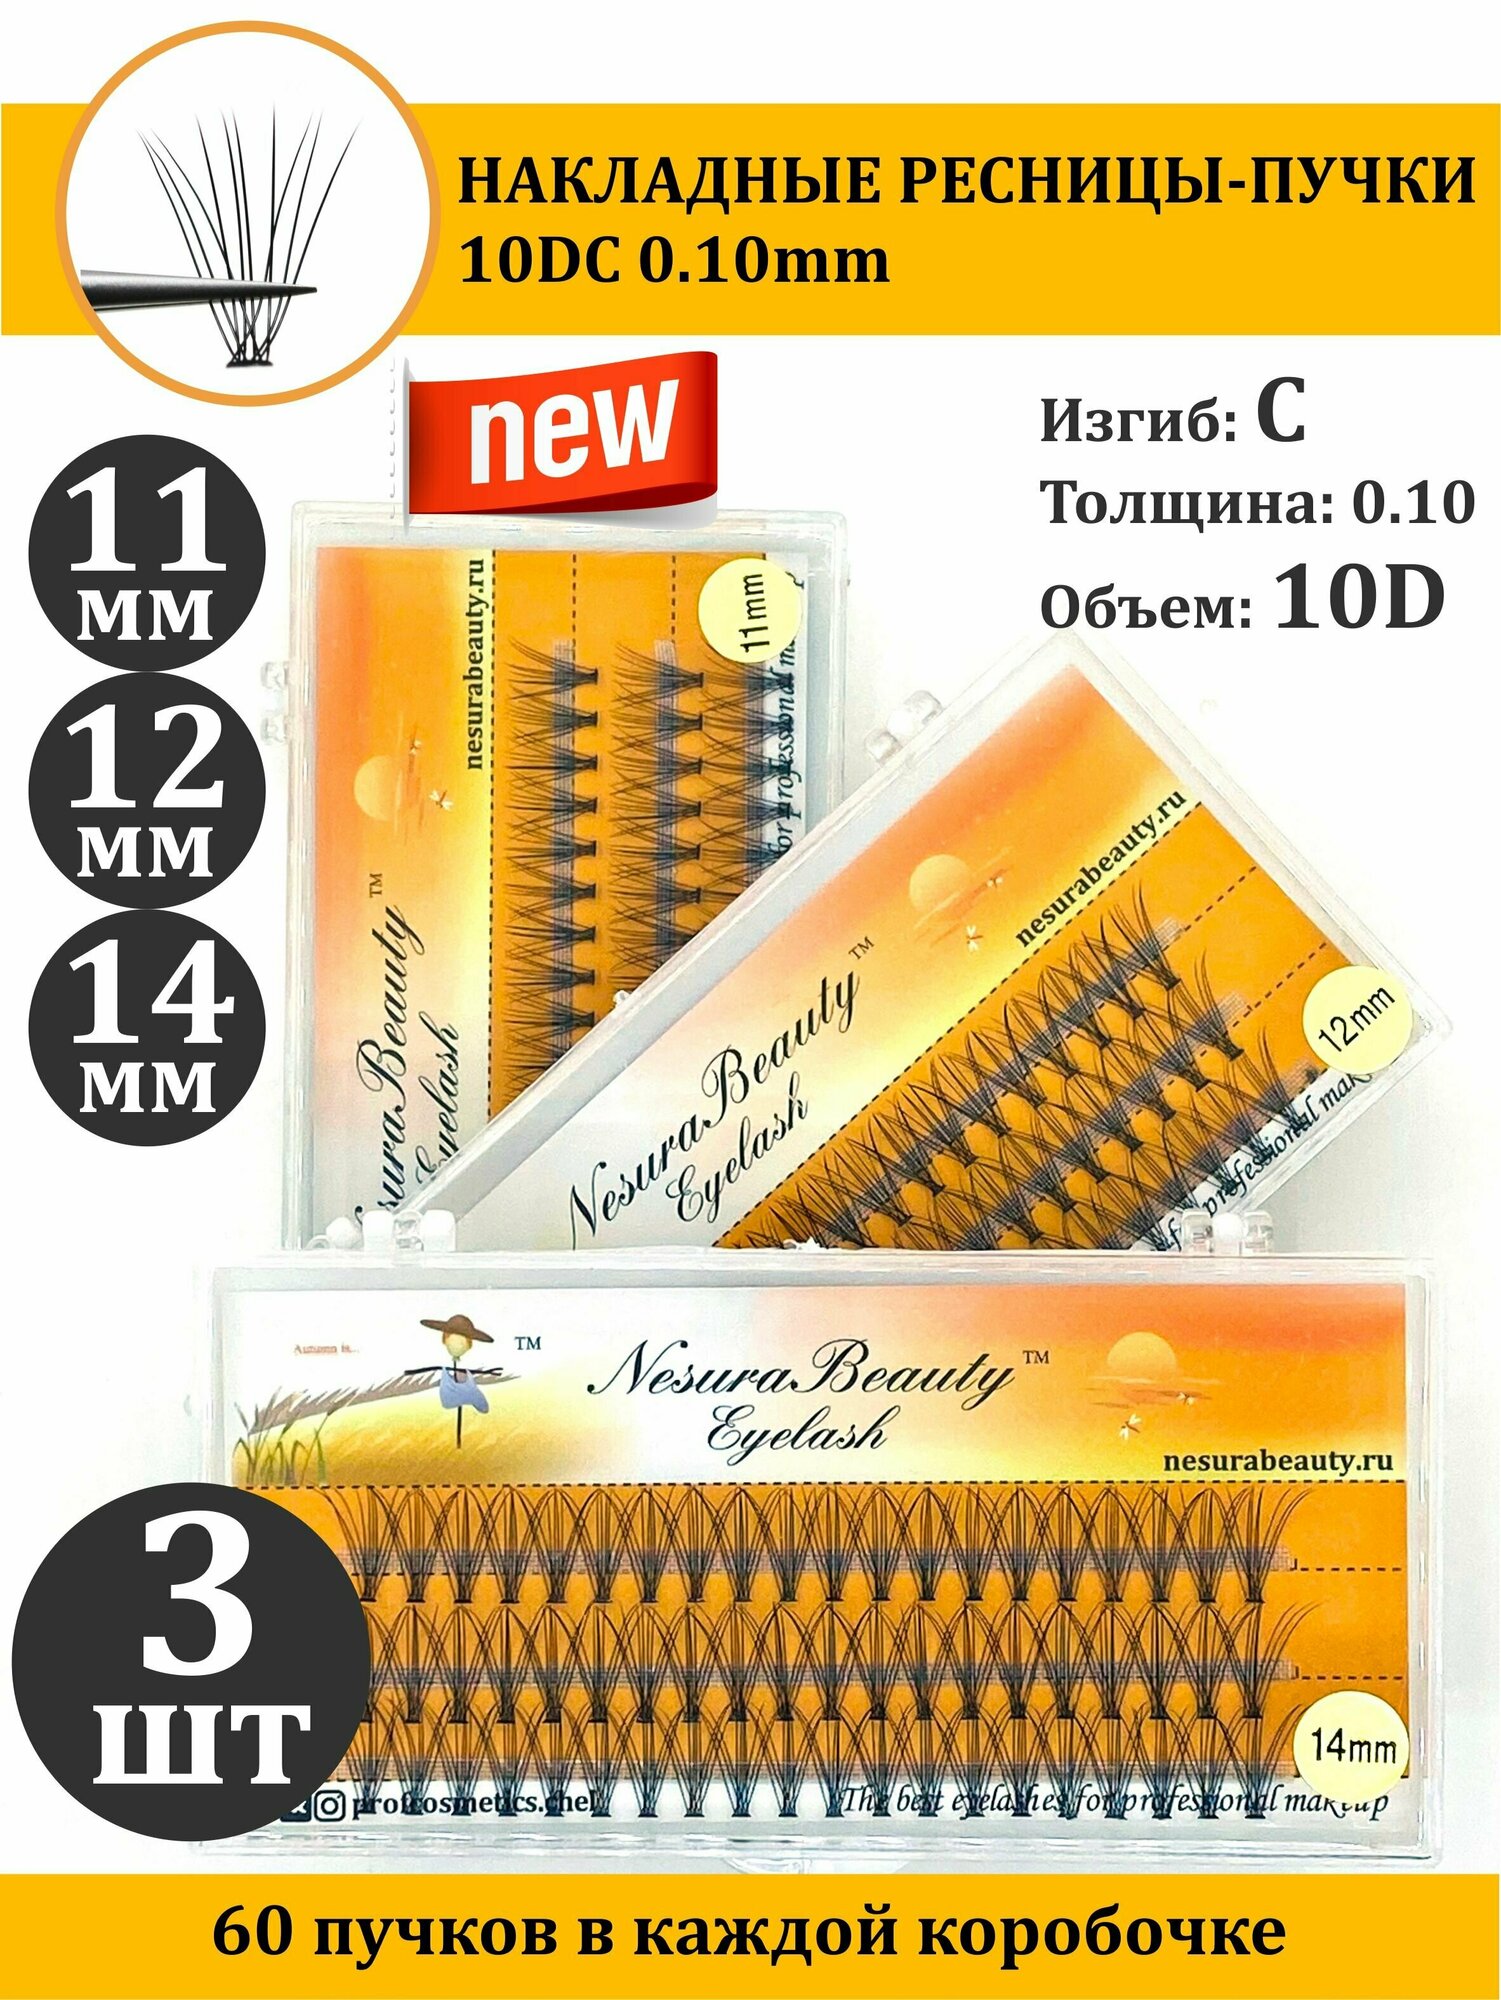 NesuraBeauty / 10D / Накладные пучки ресниц / Набор MIX 3шт / 11,12,14 мм, 0.1, изгиб С 10Д / для макияжа и визажиста